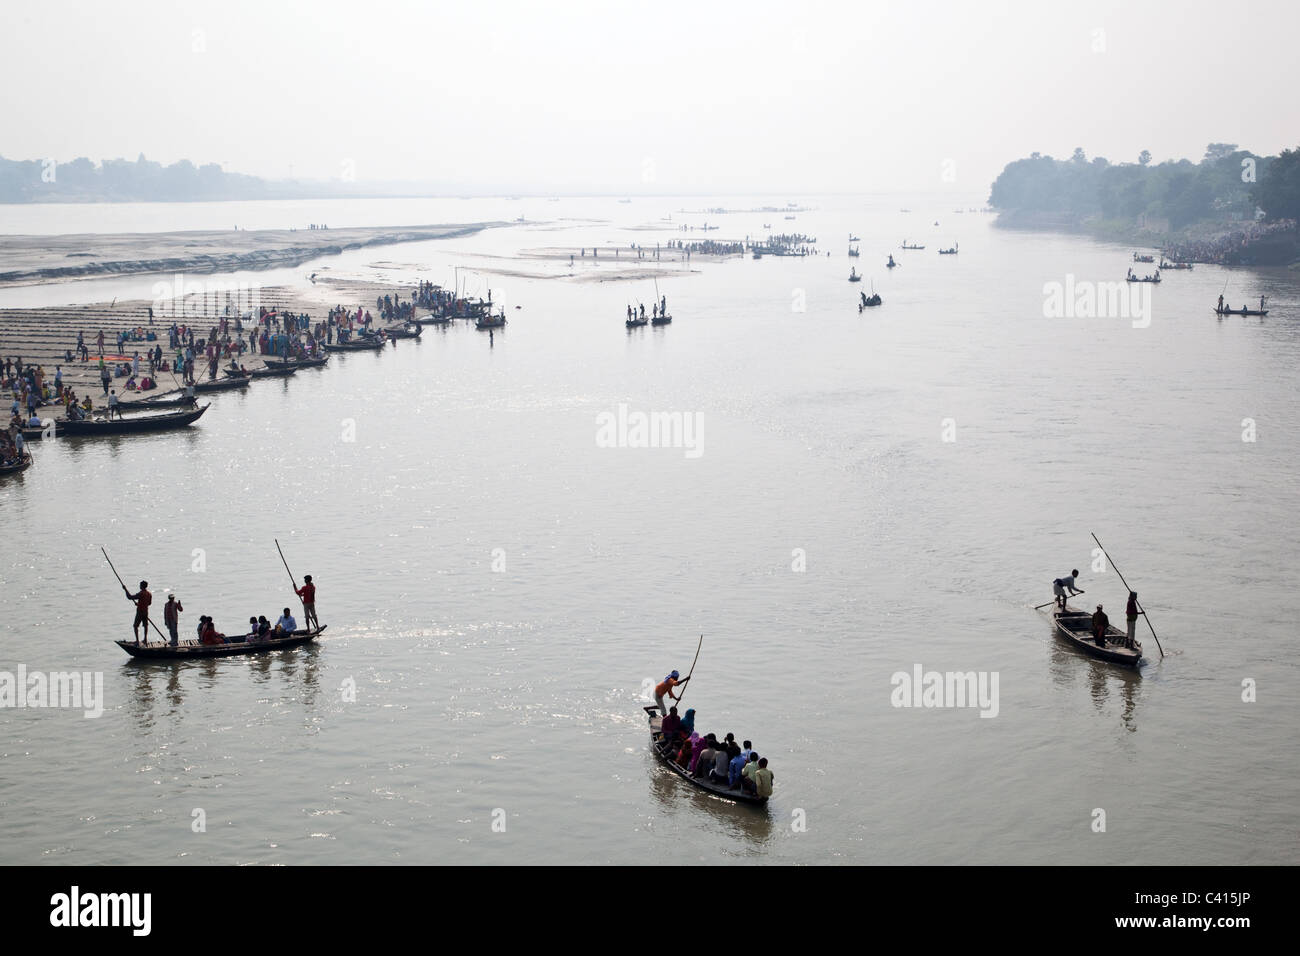 Boats with pilgrims cross Gandak river in Sonepur, Sonepur Mela in Sonepur near Patna in Bihar state, India. Stock Photo